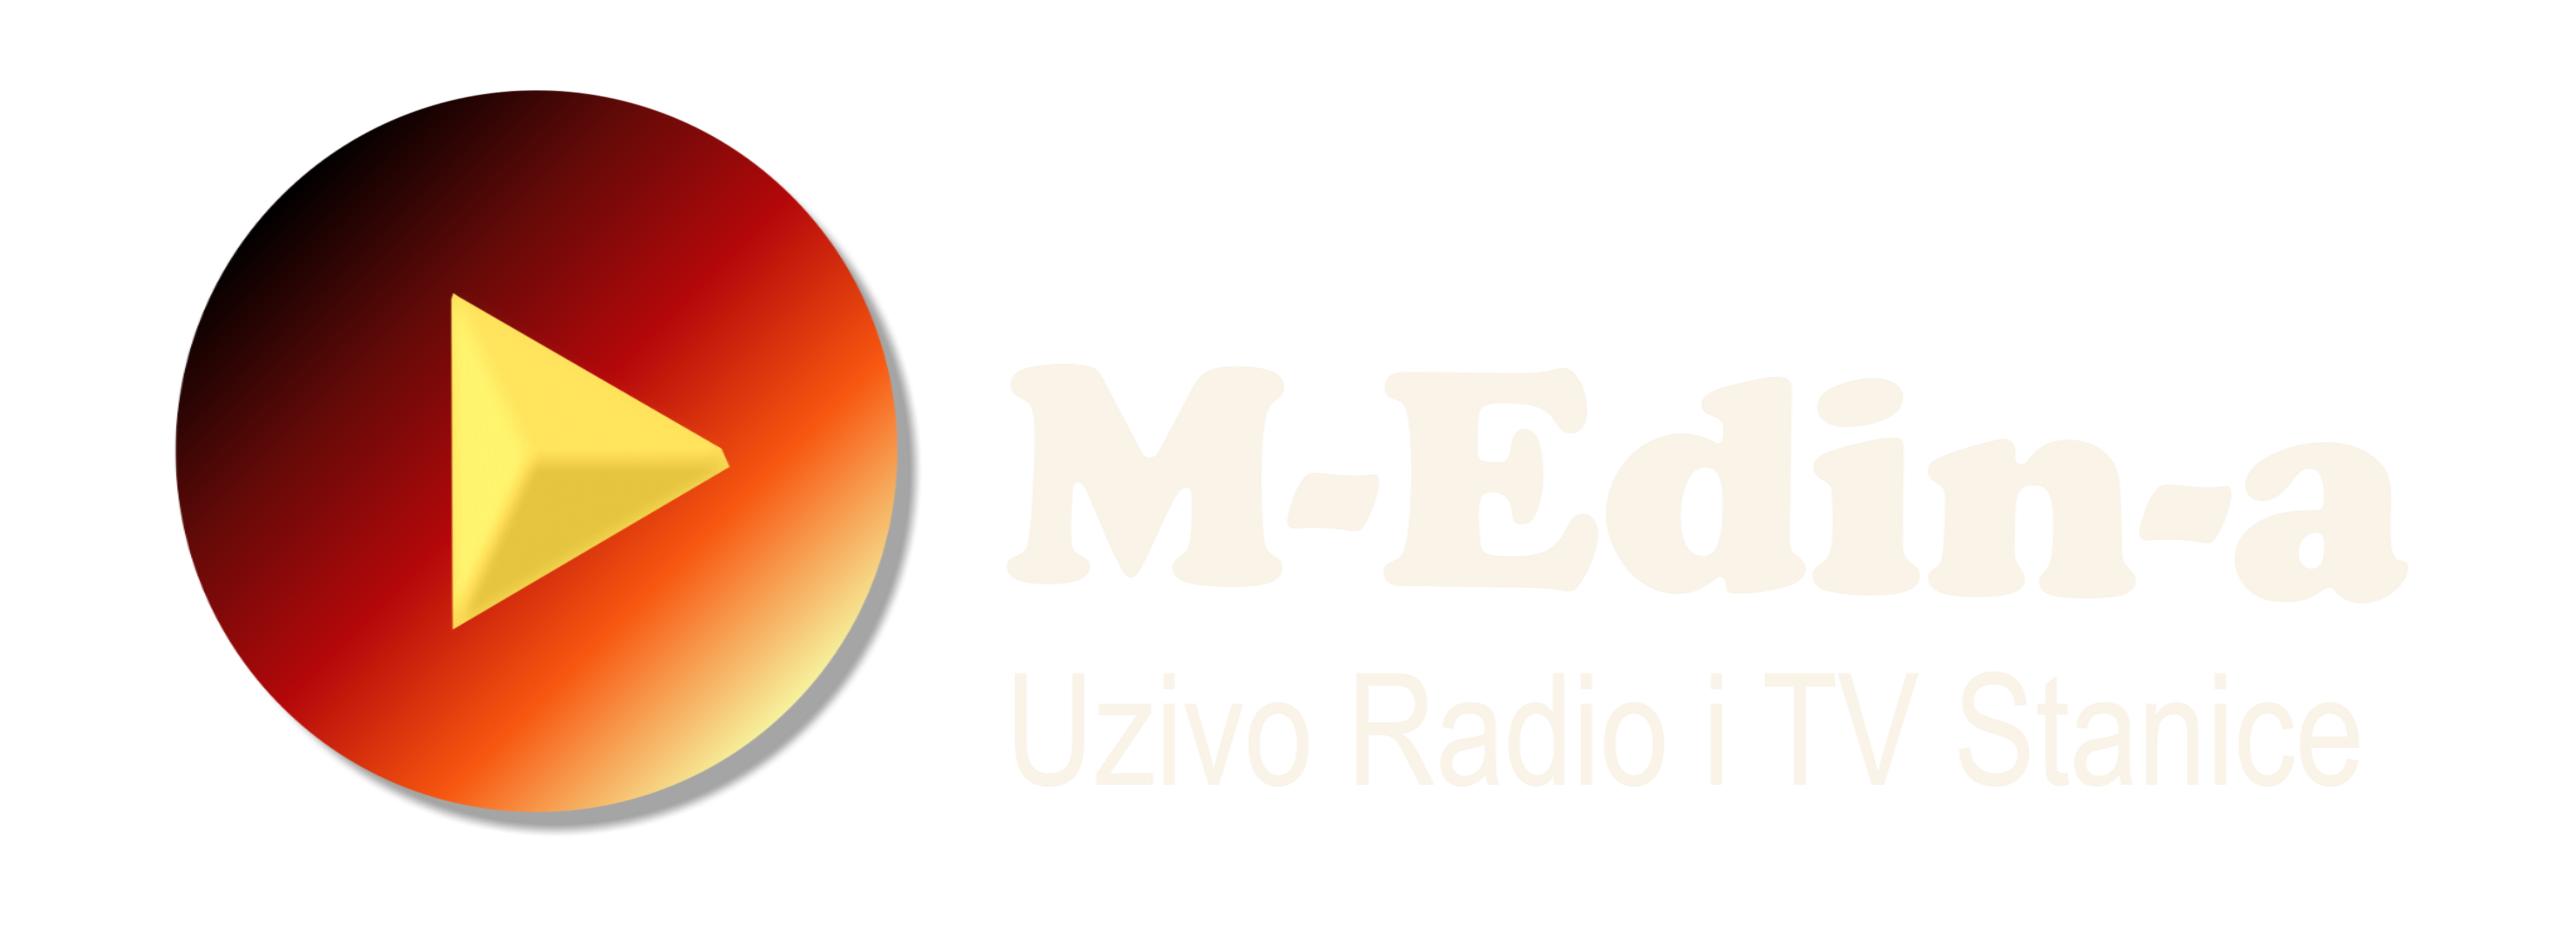 M-Edin-a | Medina & Edin